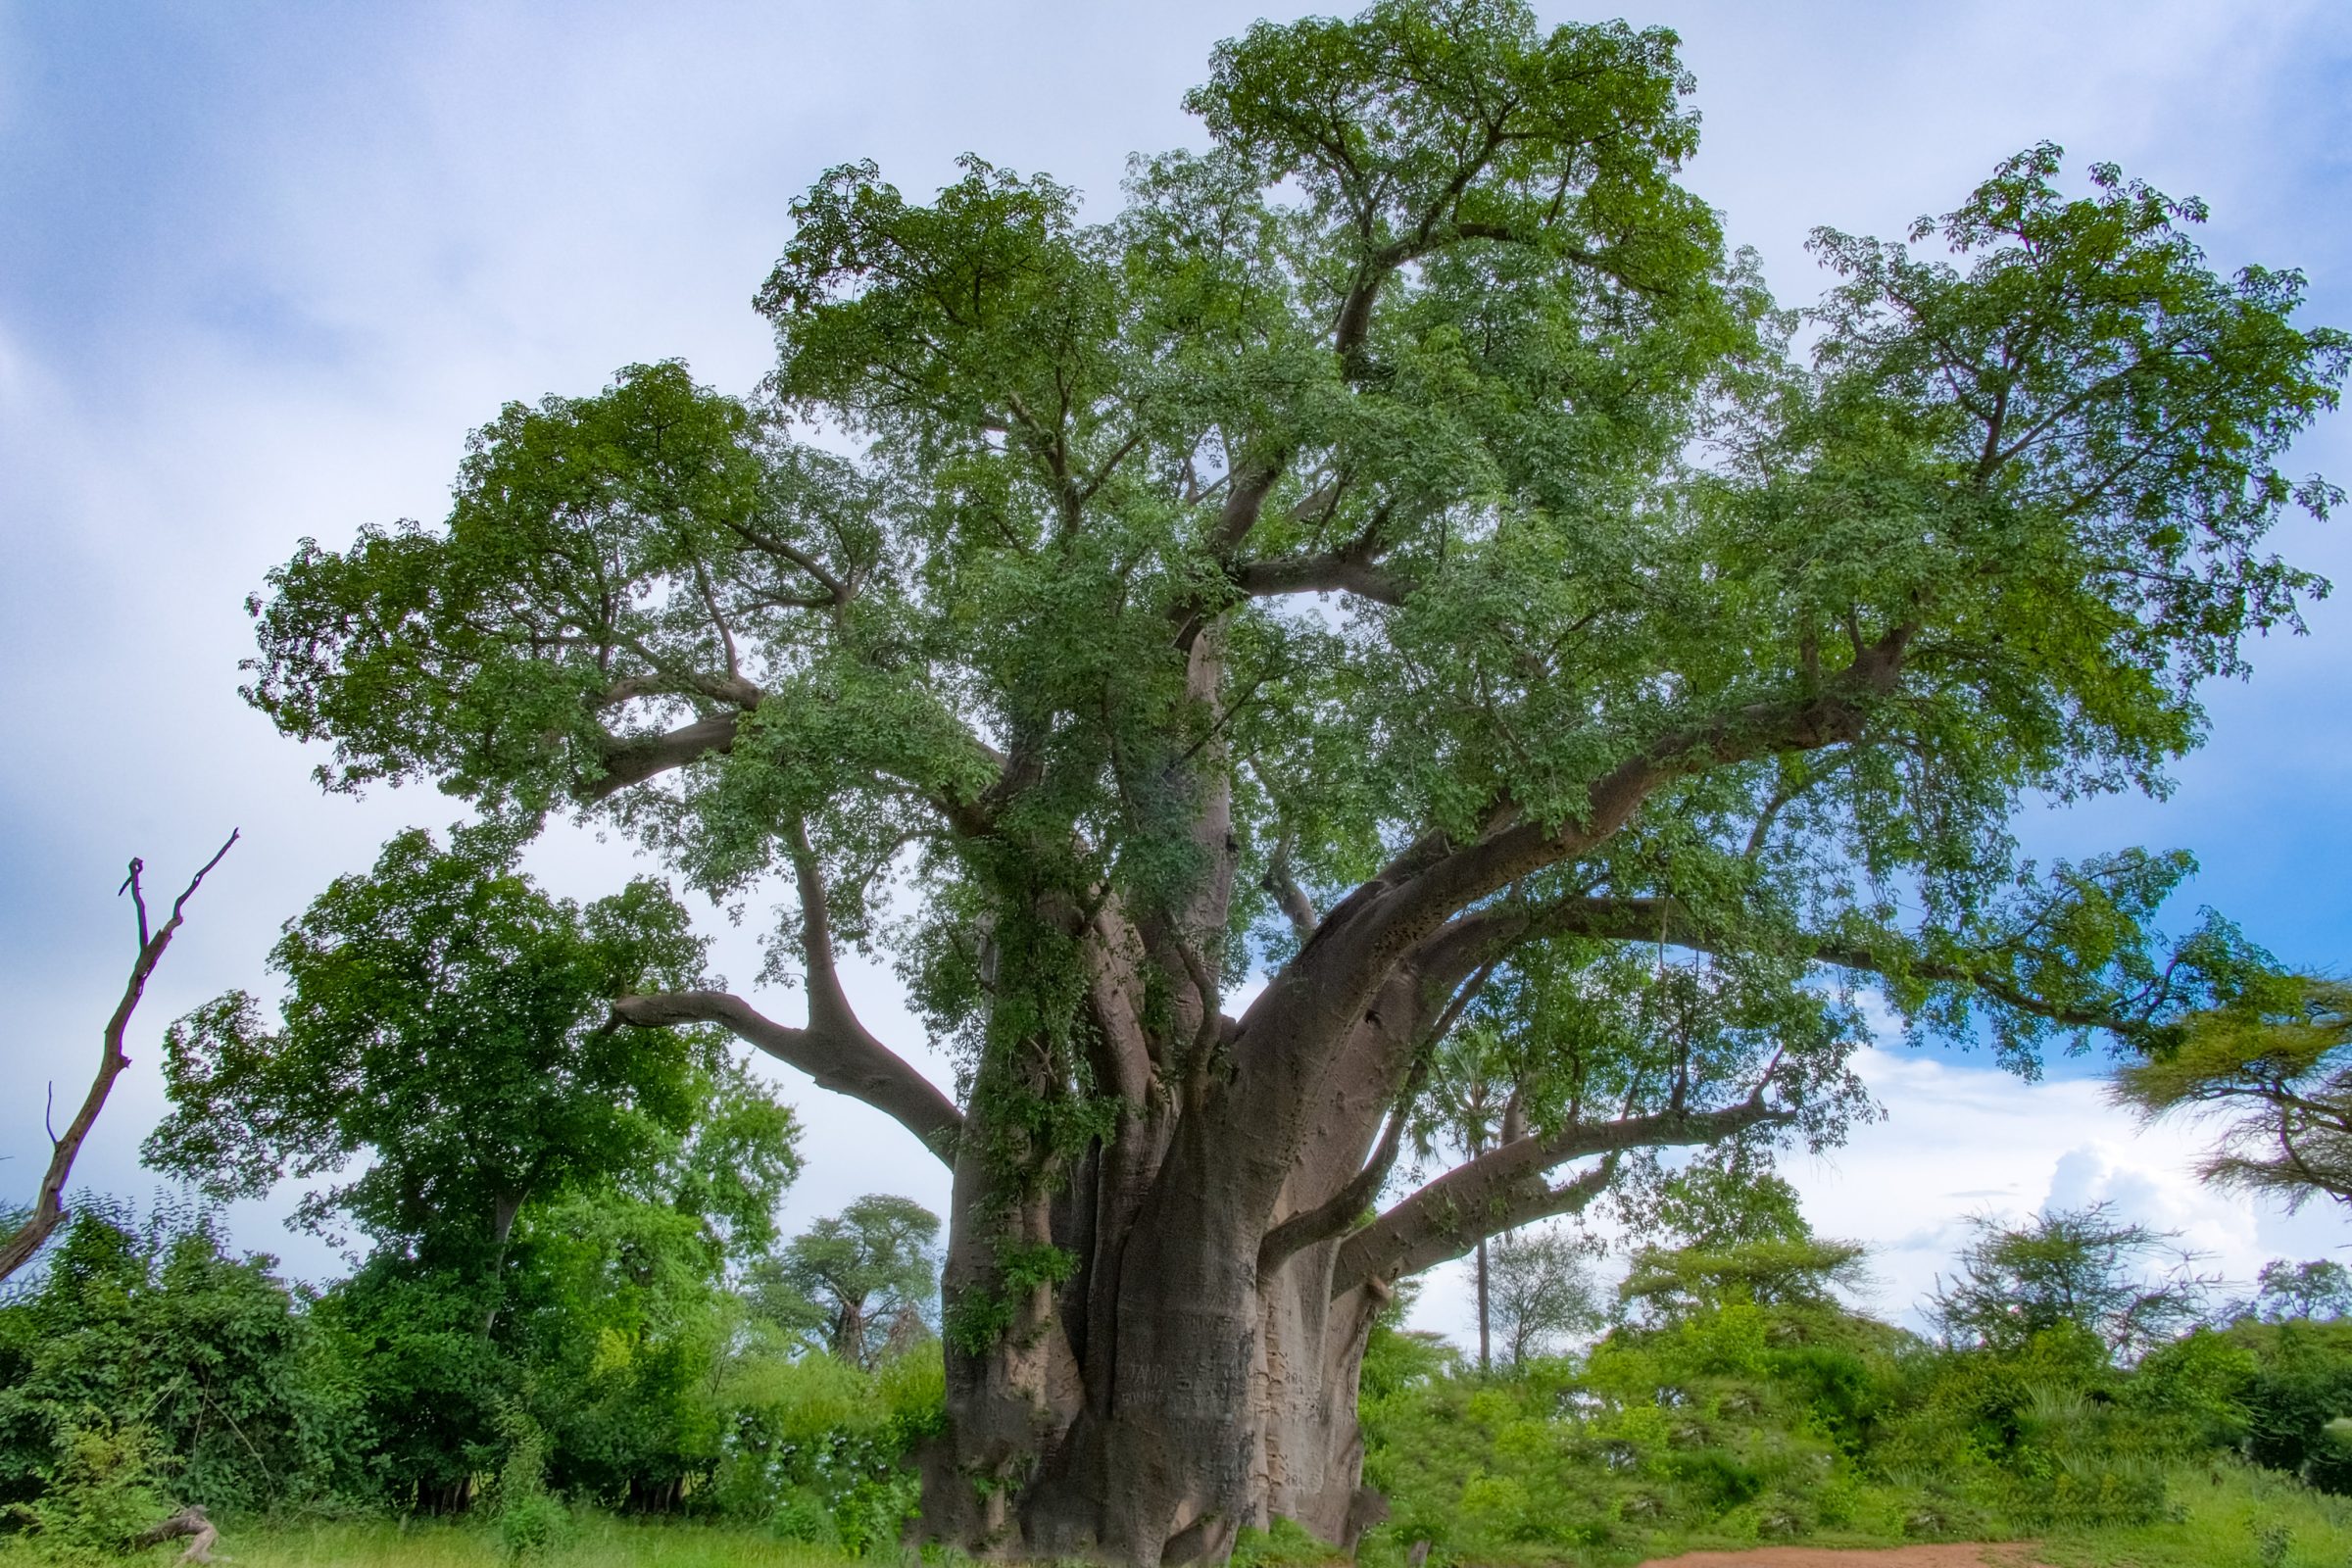 The Big Tree, de grote baobab boom net buiten Victoria Falls National park